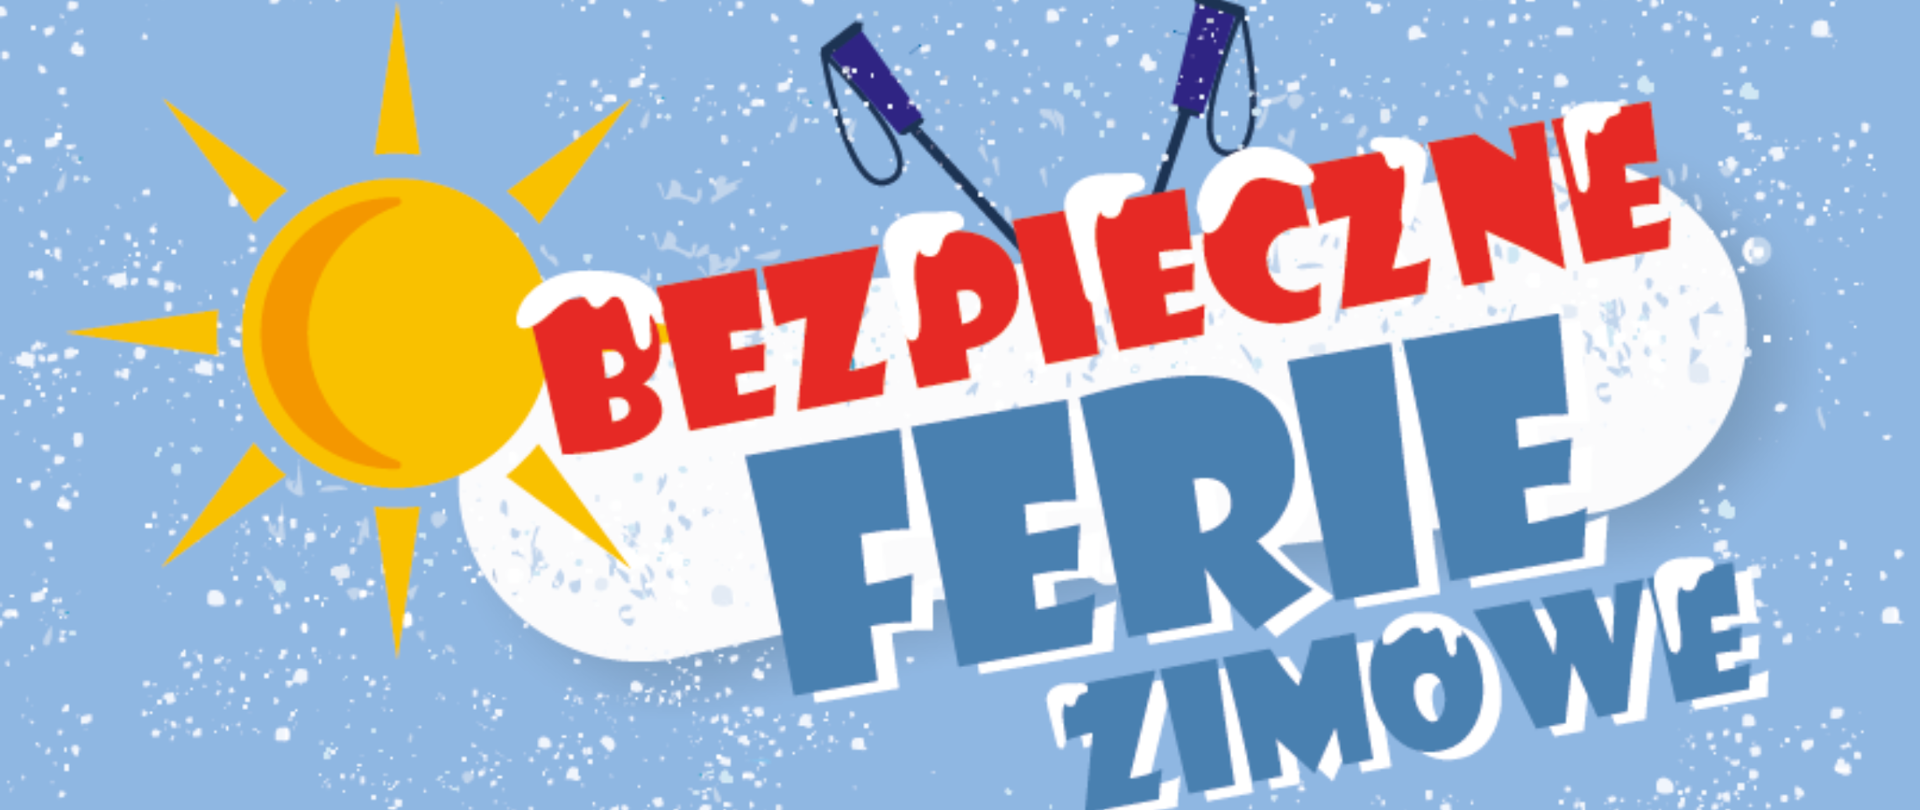 niebieski baner z napisem Bezpieczne ferie zimowe, słońce i kijki narciarskie